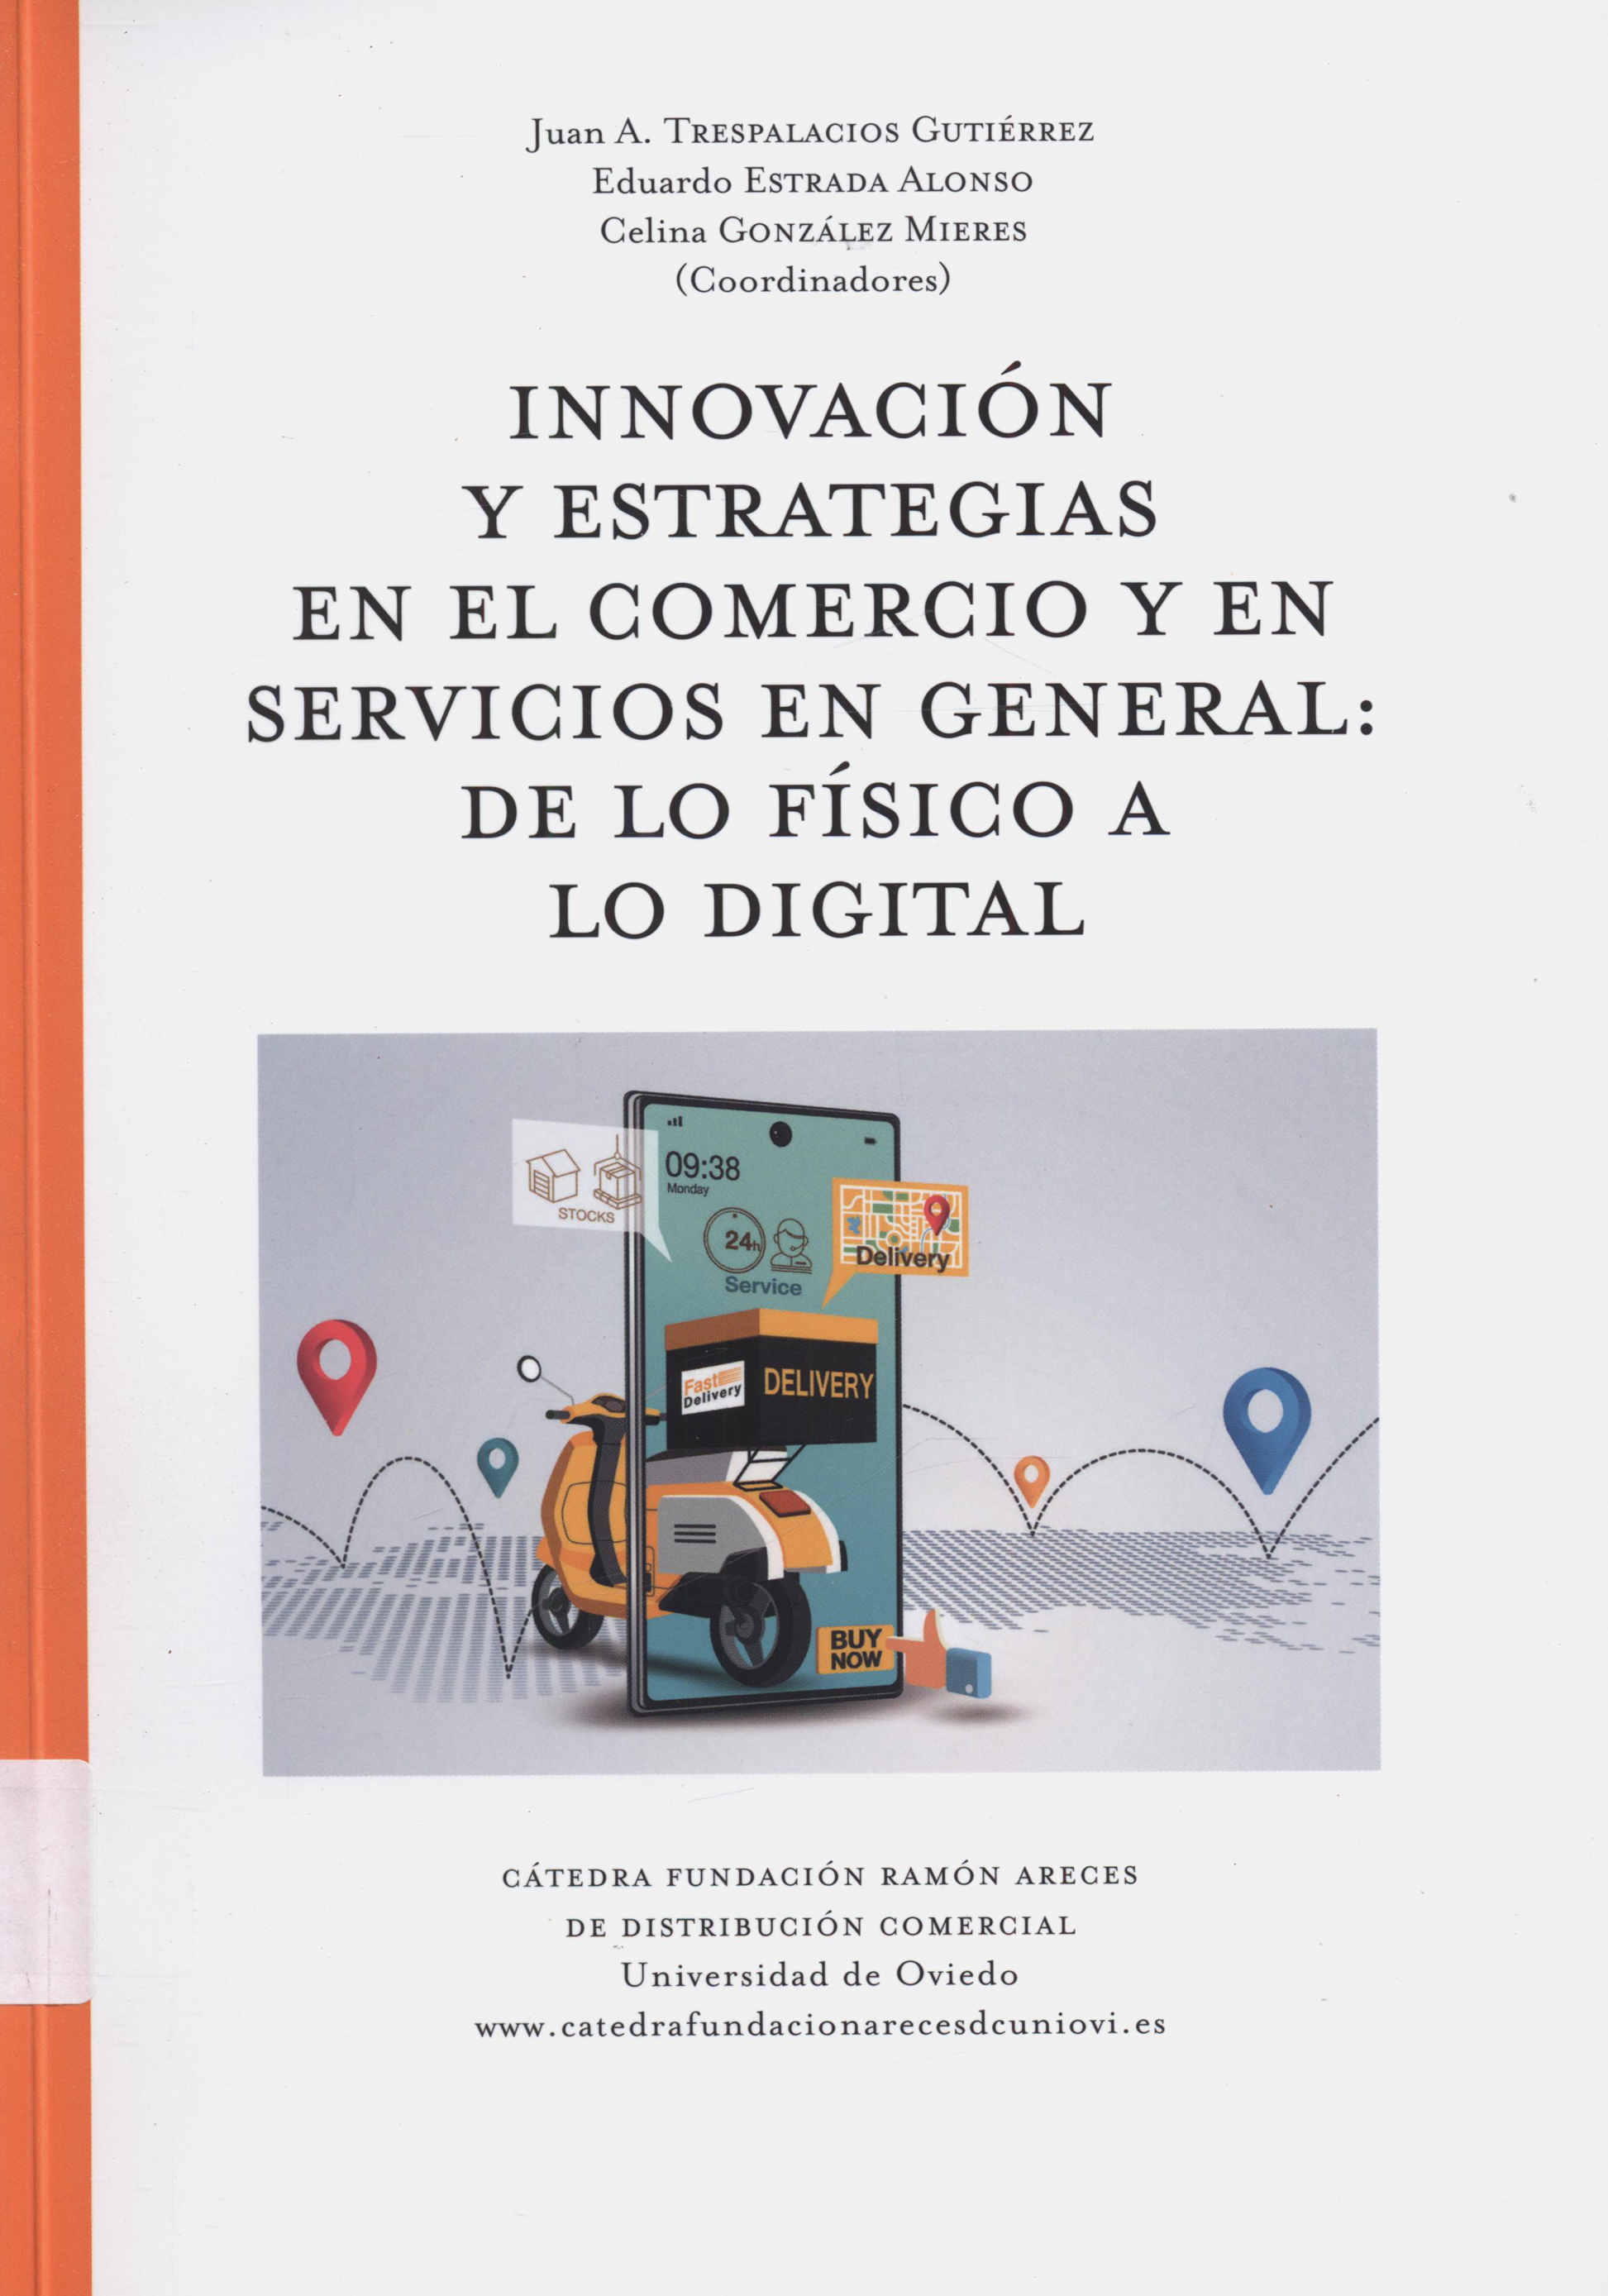 Imagen de portada del libro Innovación y estrategias en el comercio y en servivios en general